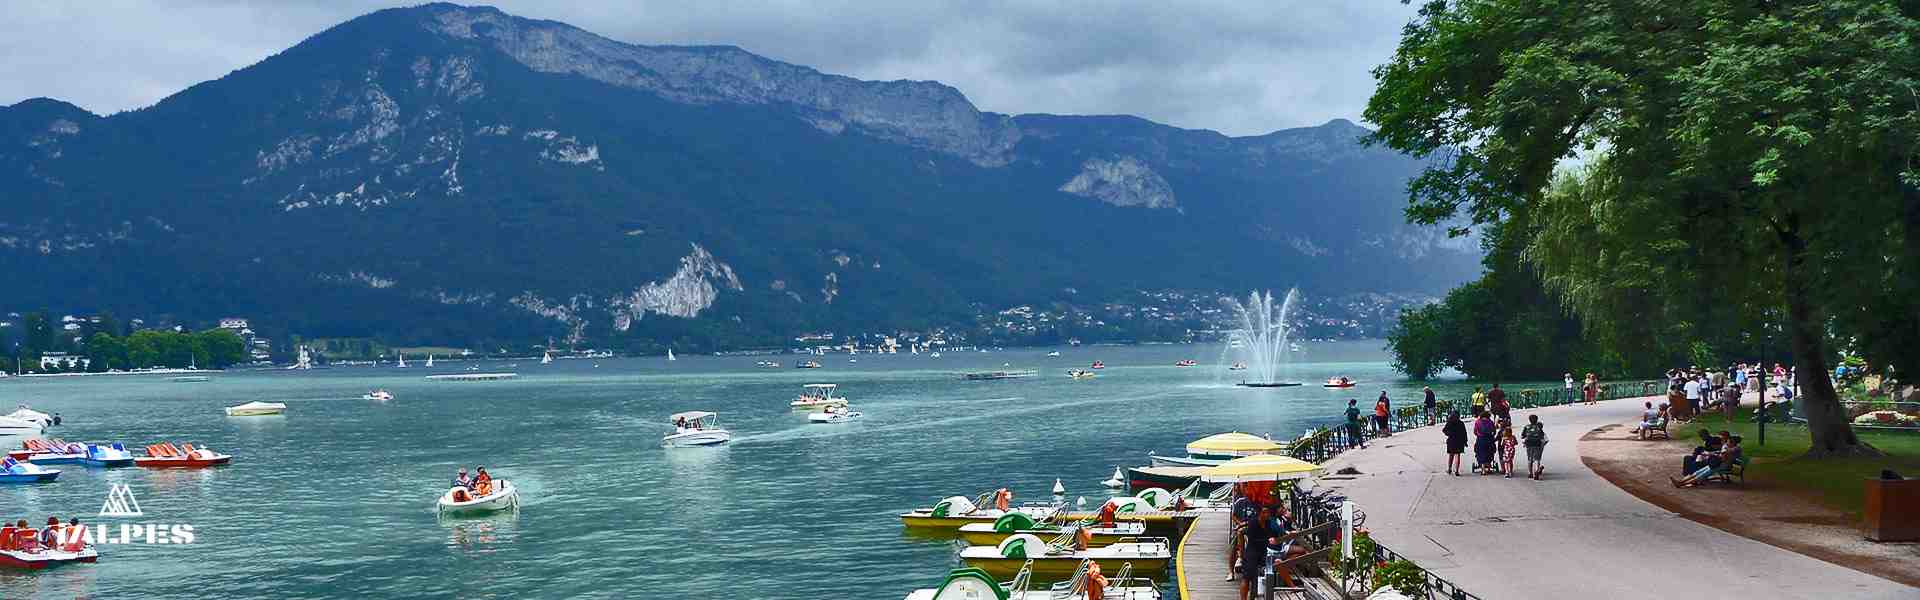 Lac d'Annecy et promenade du Jardin de l'Europe, Haute-Savoie